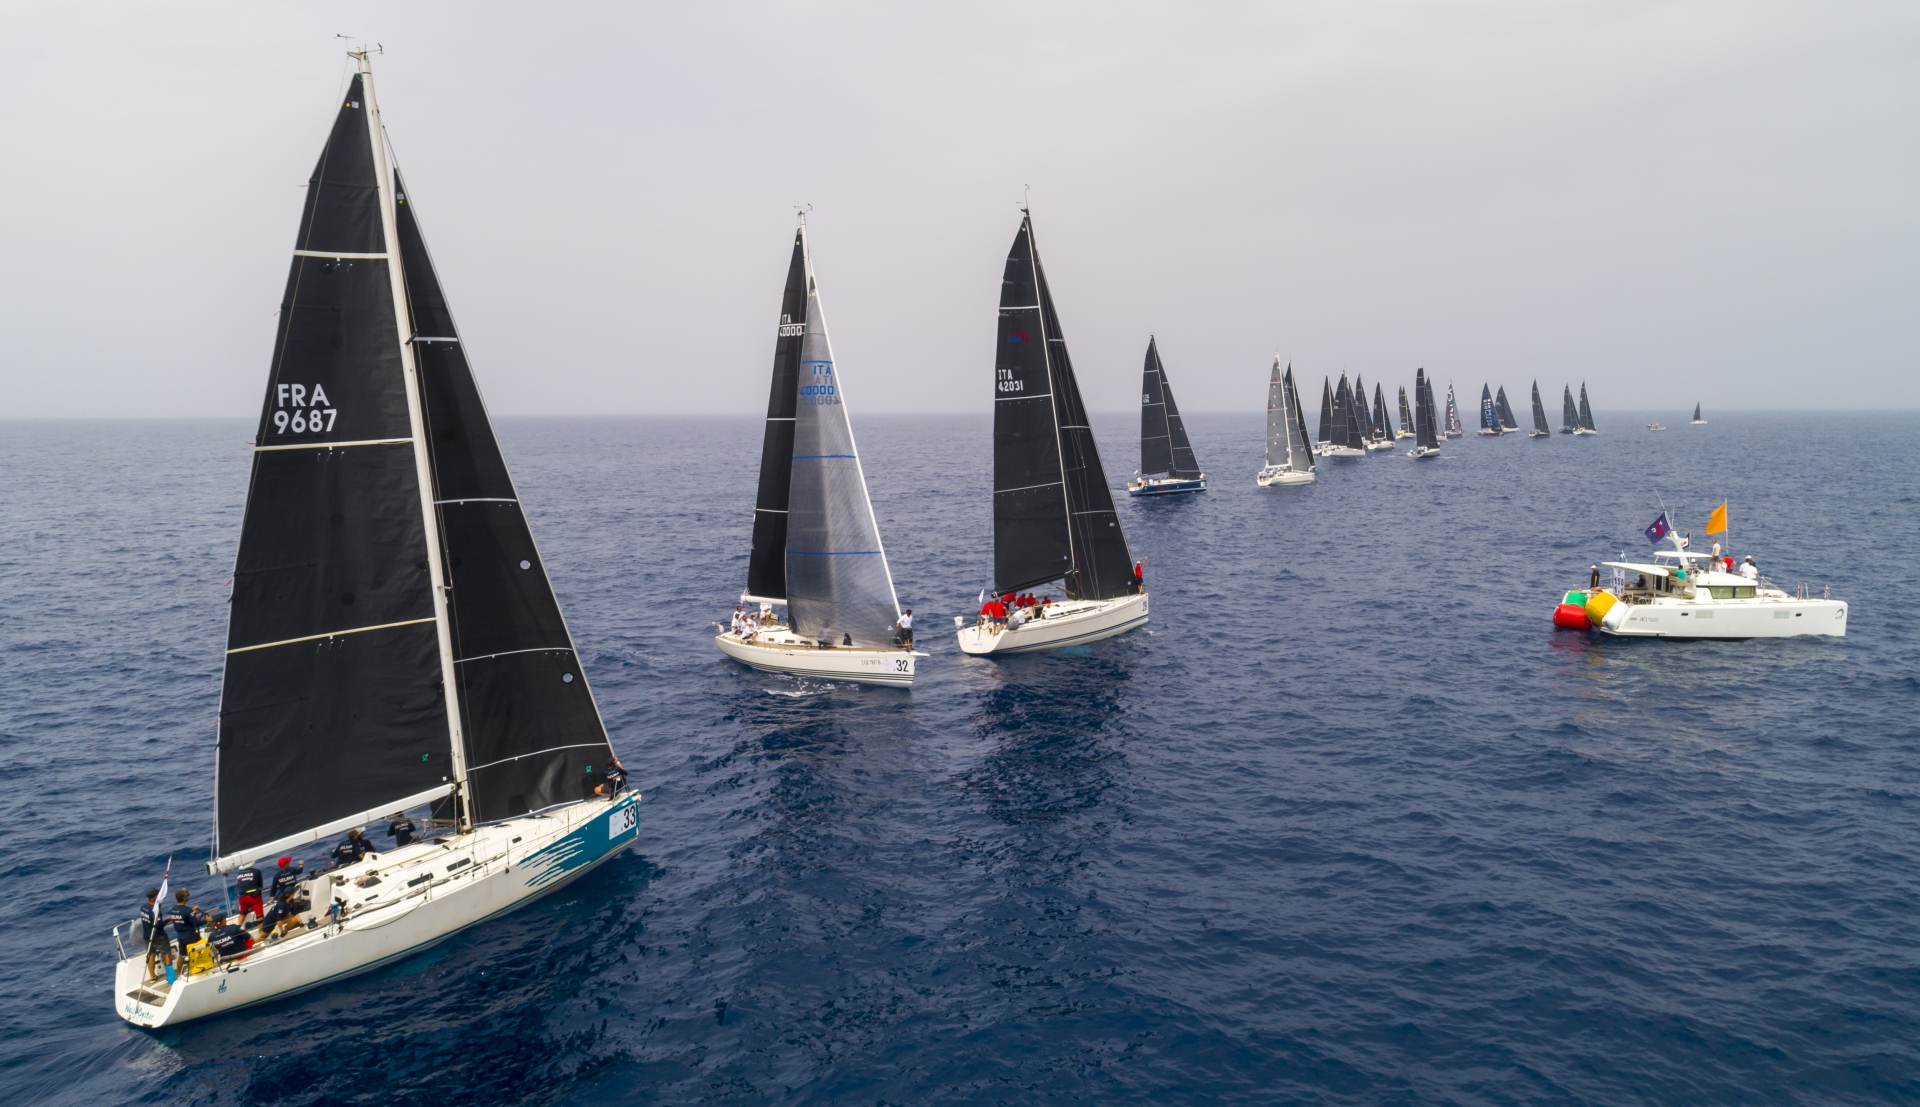 Vento instabile e leggero, regate del Mondiale ORC rimandate a domani - Comunicati Stampa - Yacht Club Costa Smeralda